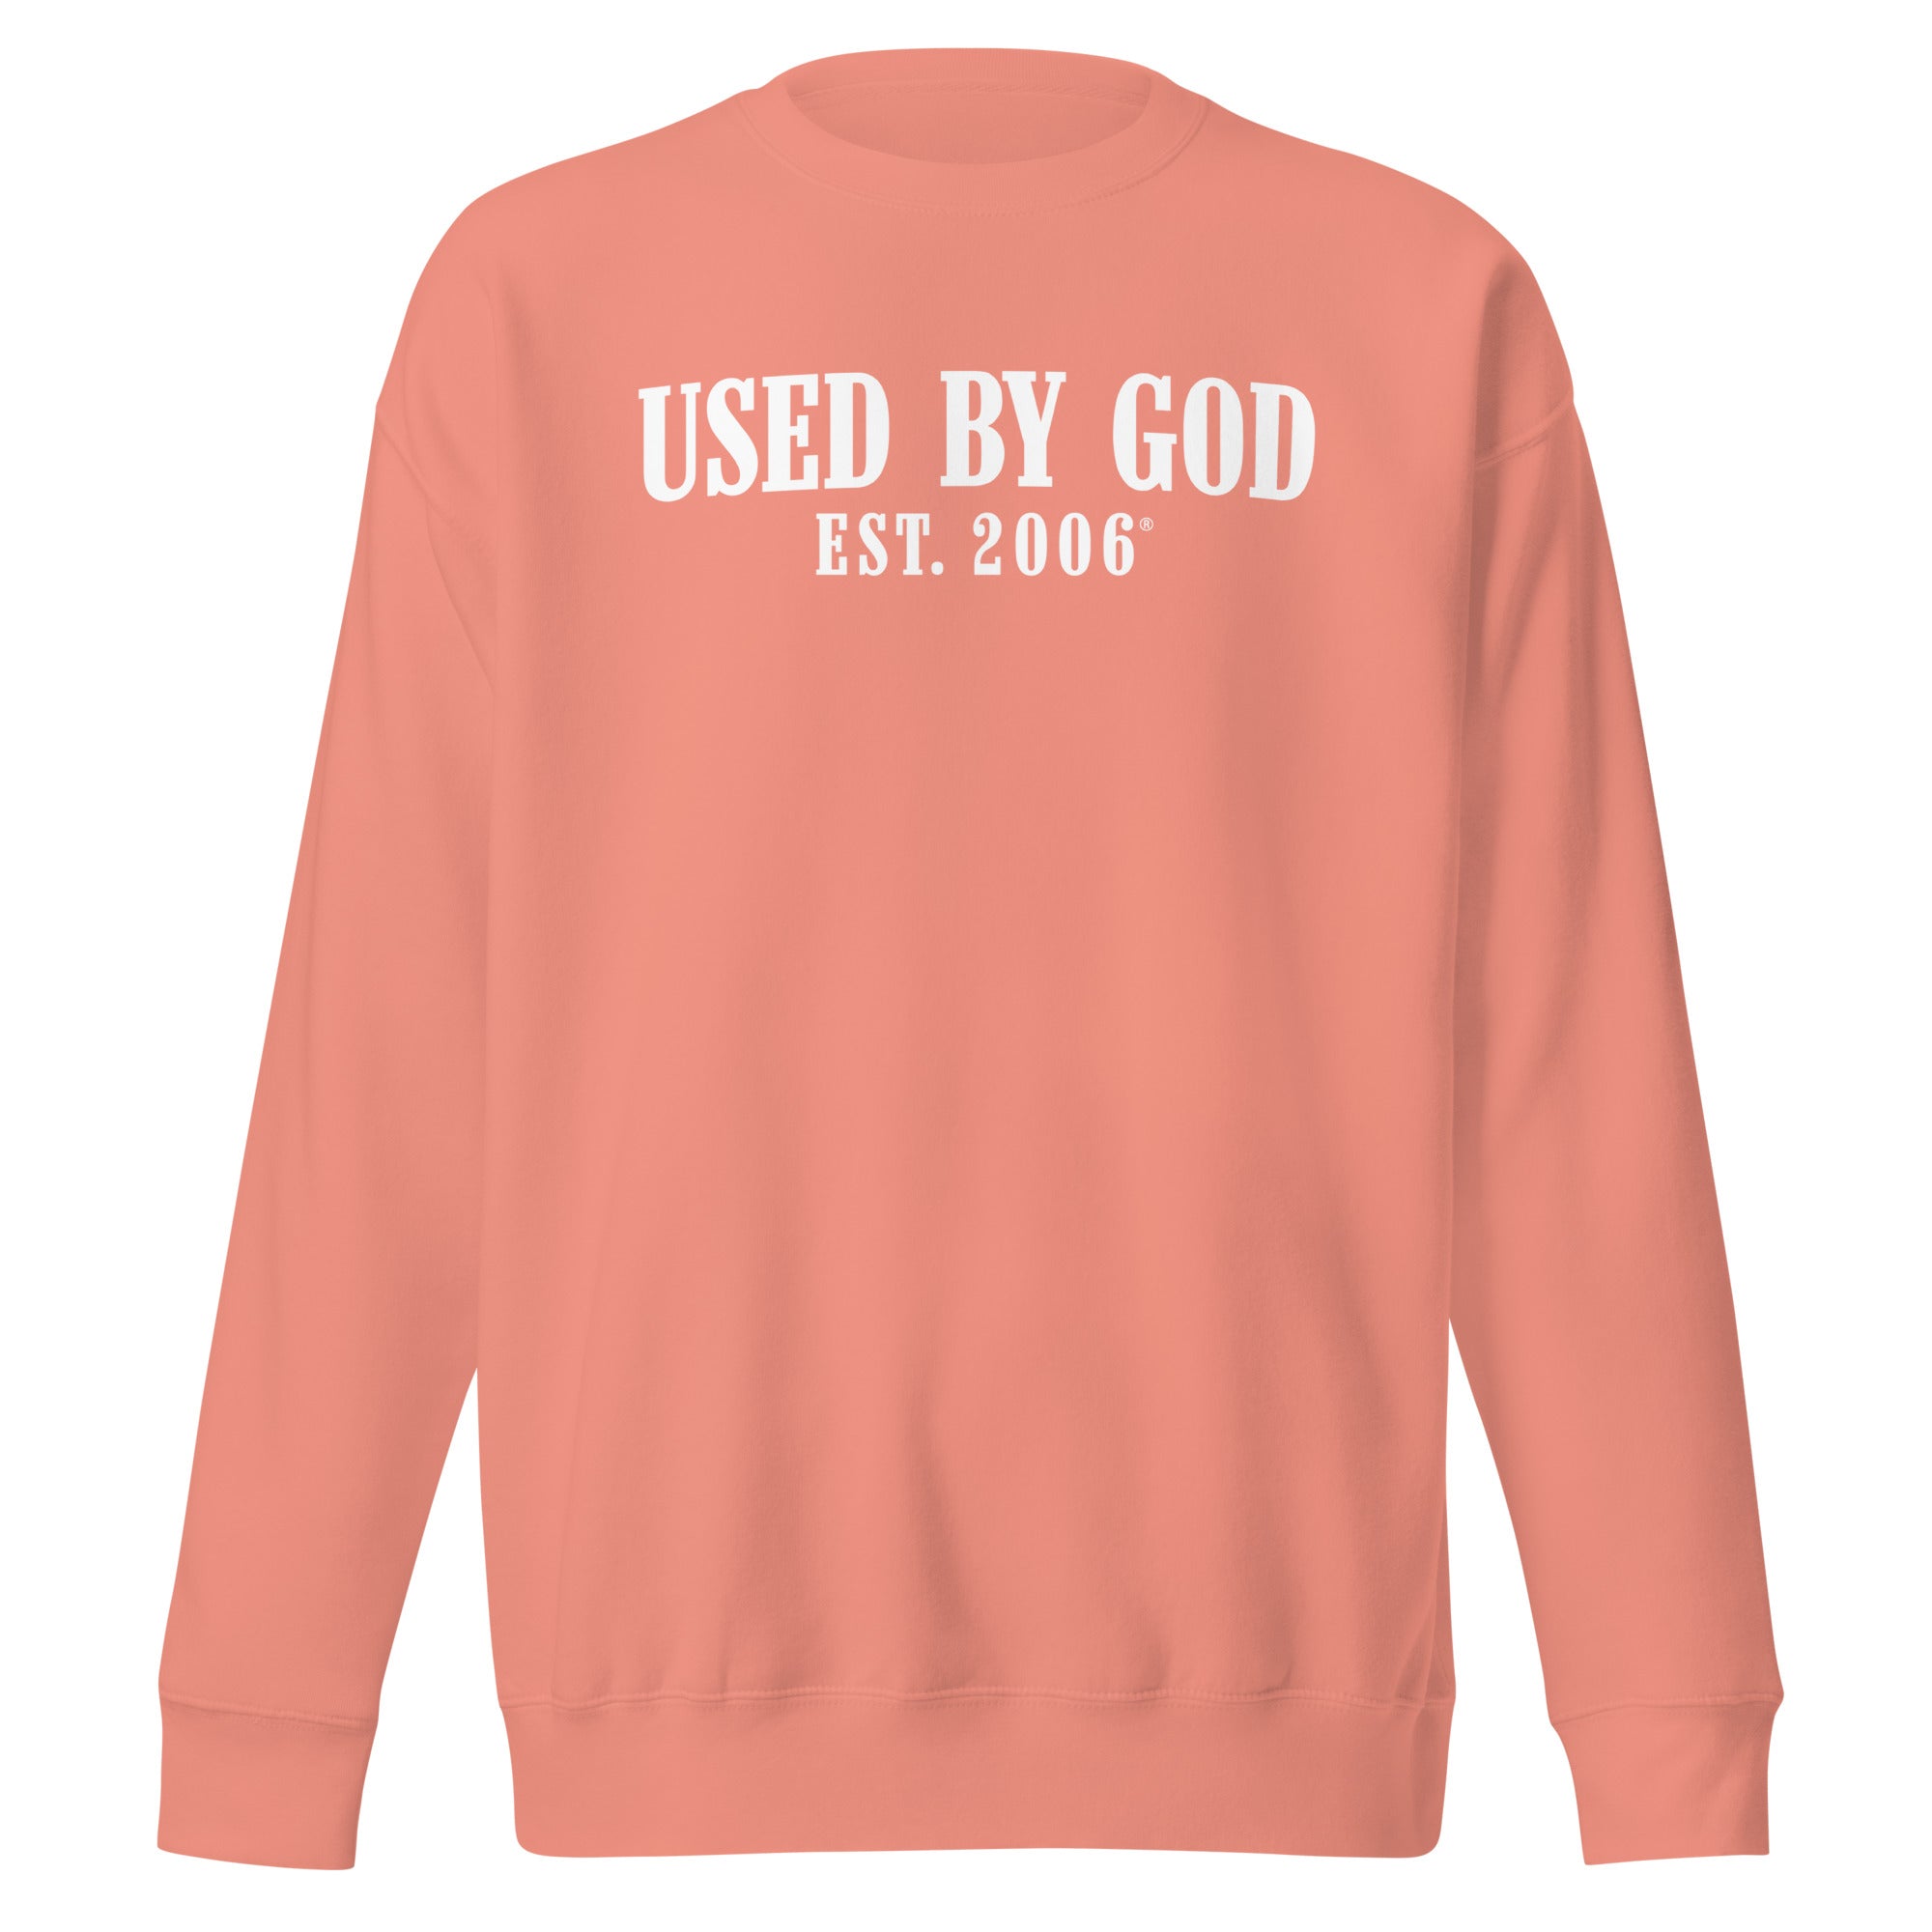 Used By God Est. 2006 Sweatshirt